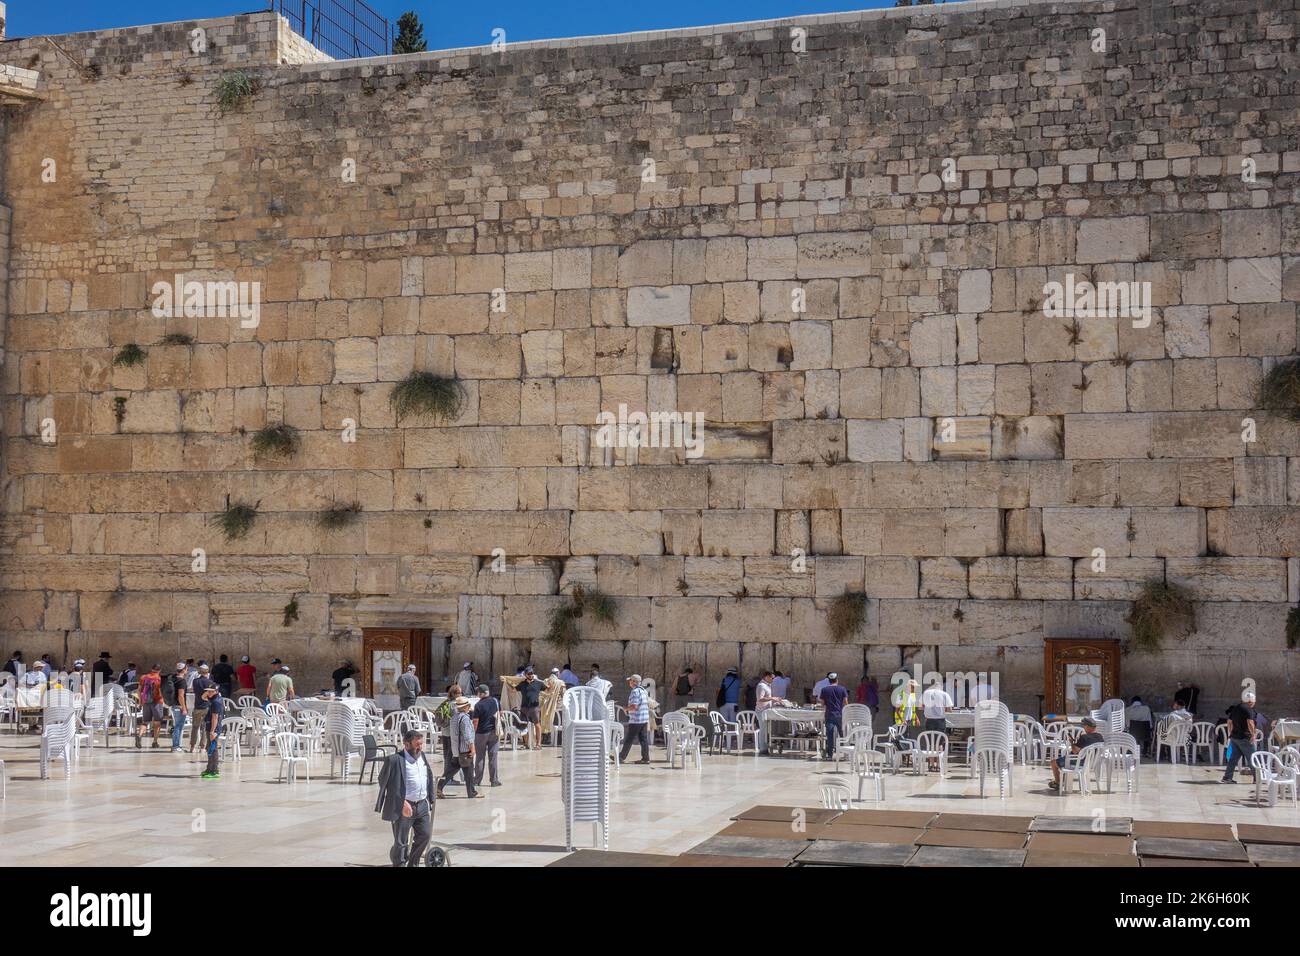 Israel, Jerusalén, el muro occidental, los judíos en oración Foto de stock